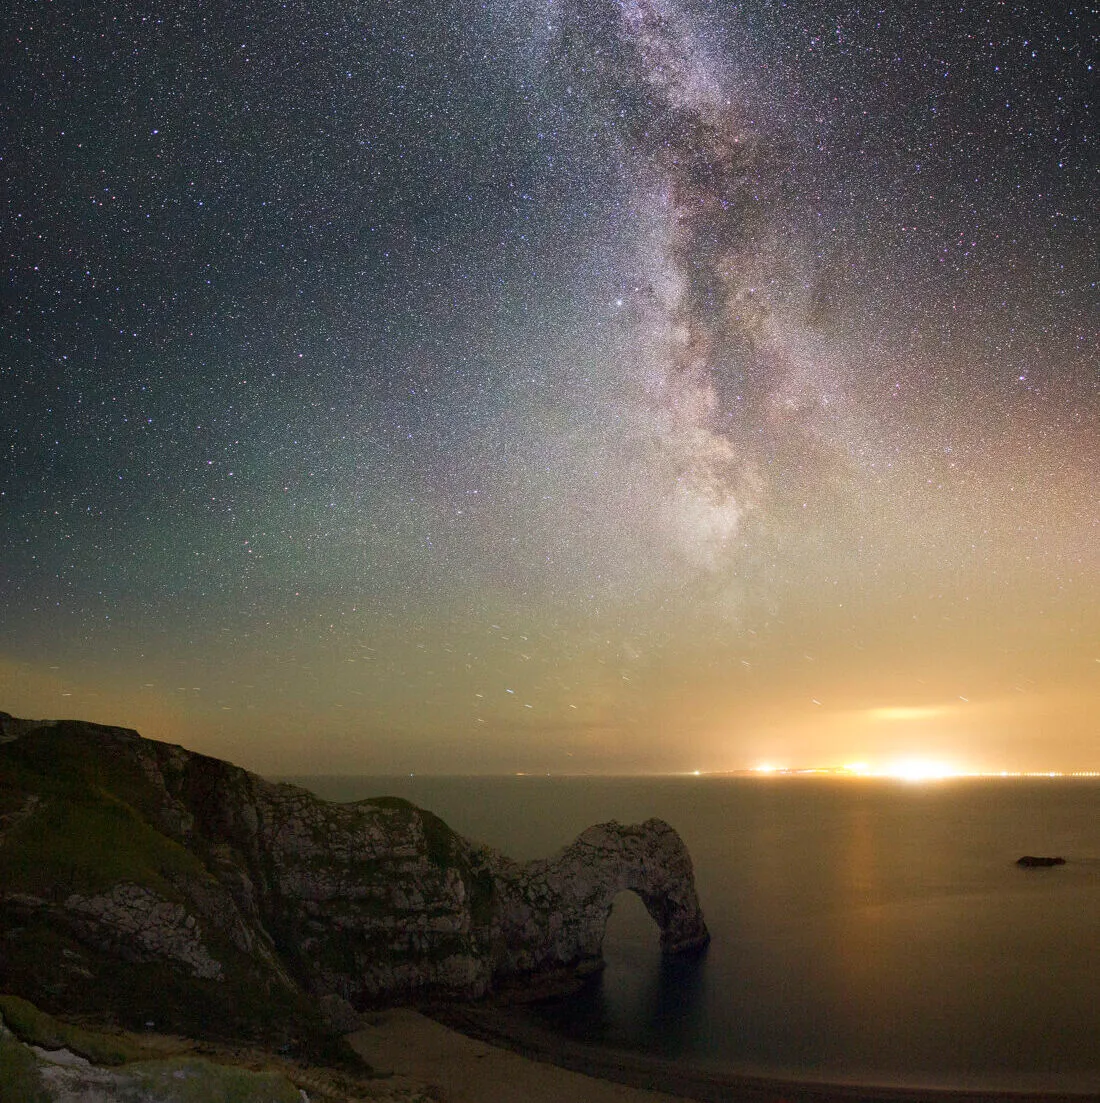 Milky Way over Durdle Door by Mark Pelleymounter, Dorset, UK. Equipment: Canon 7d, Sigma 10-20mm, Skywatcher Star Adventurer.